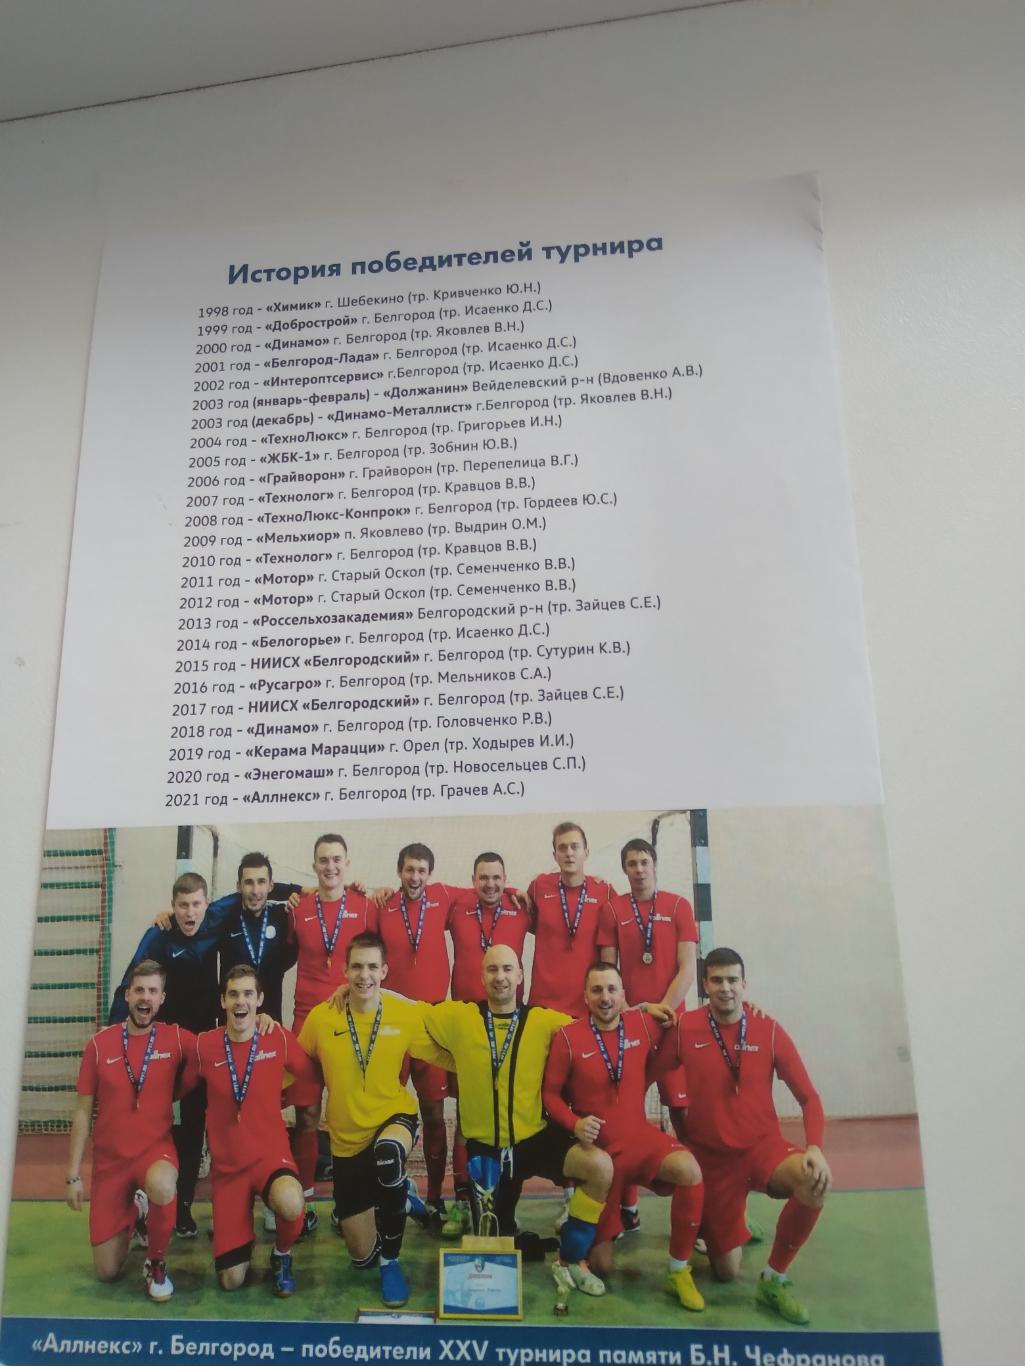 XXVIТУРНИР по мини-футболу памяти Б.Н ЧЕФРАНОВА 2022 Г. 2